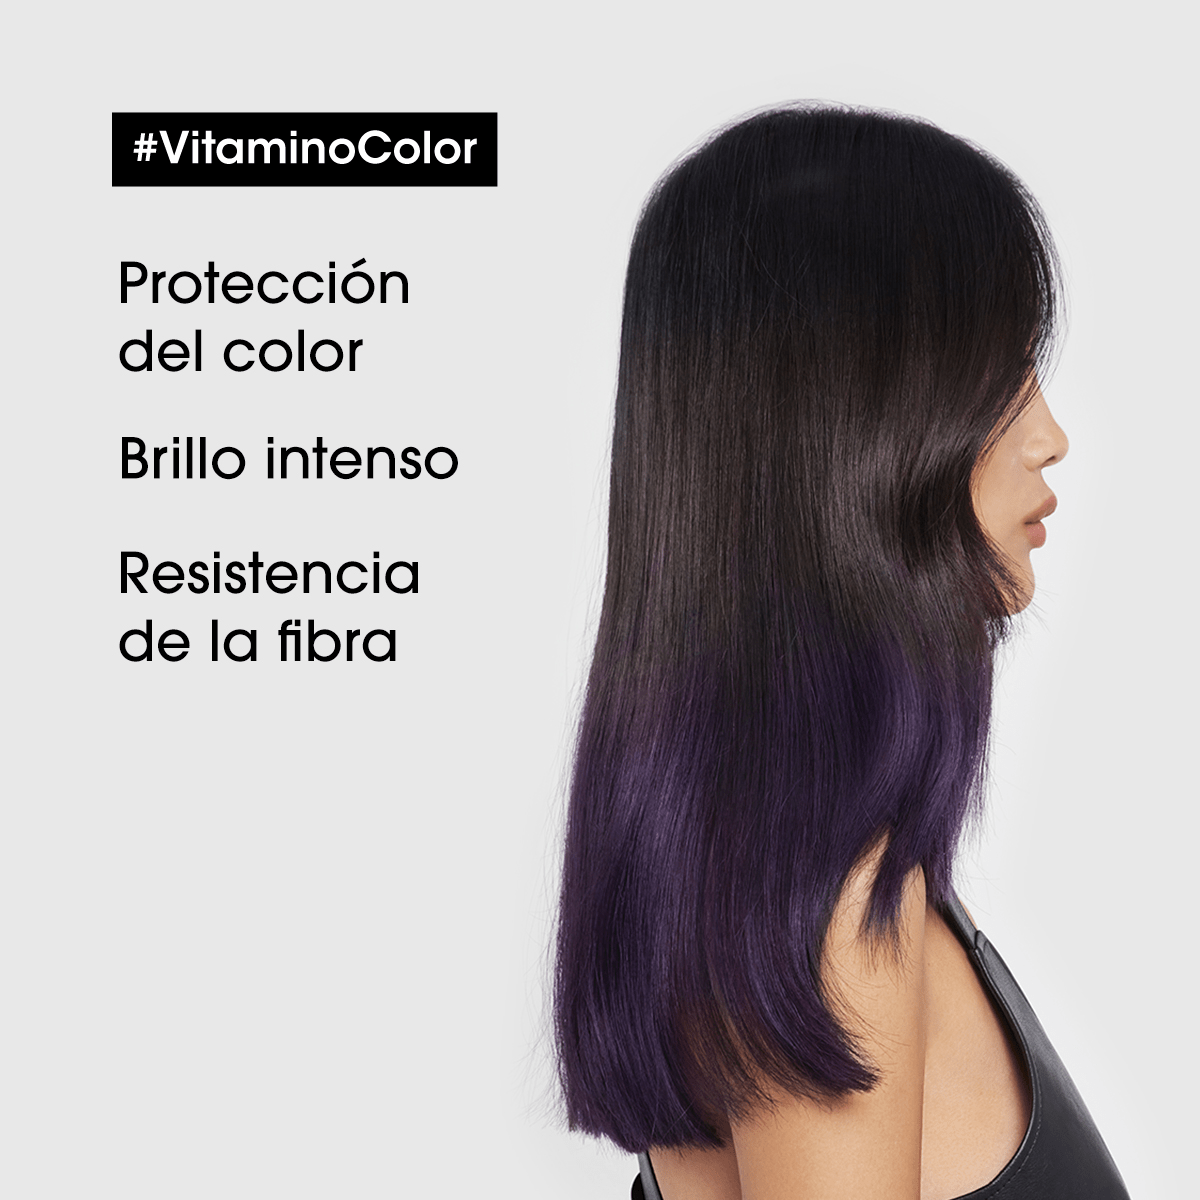 L'Oréal Professionnel Hair Care Mascarilla Vitamino Color 250ml Roberta Beauty Club